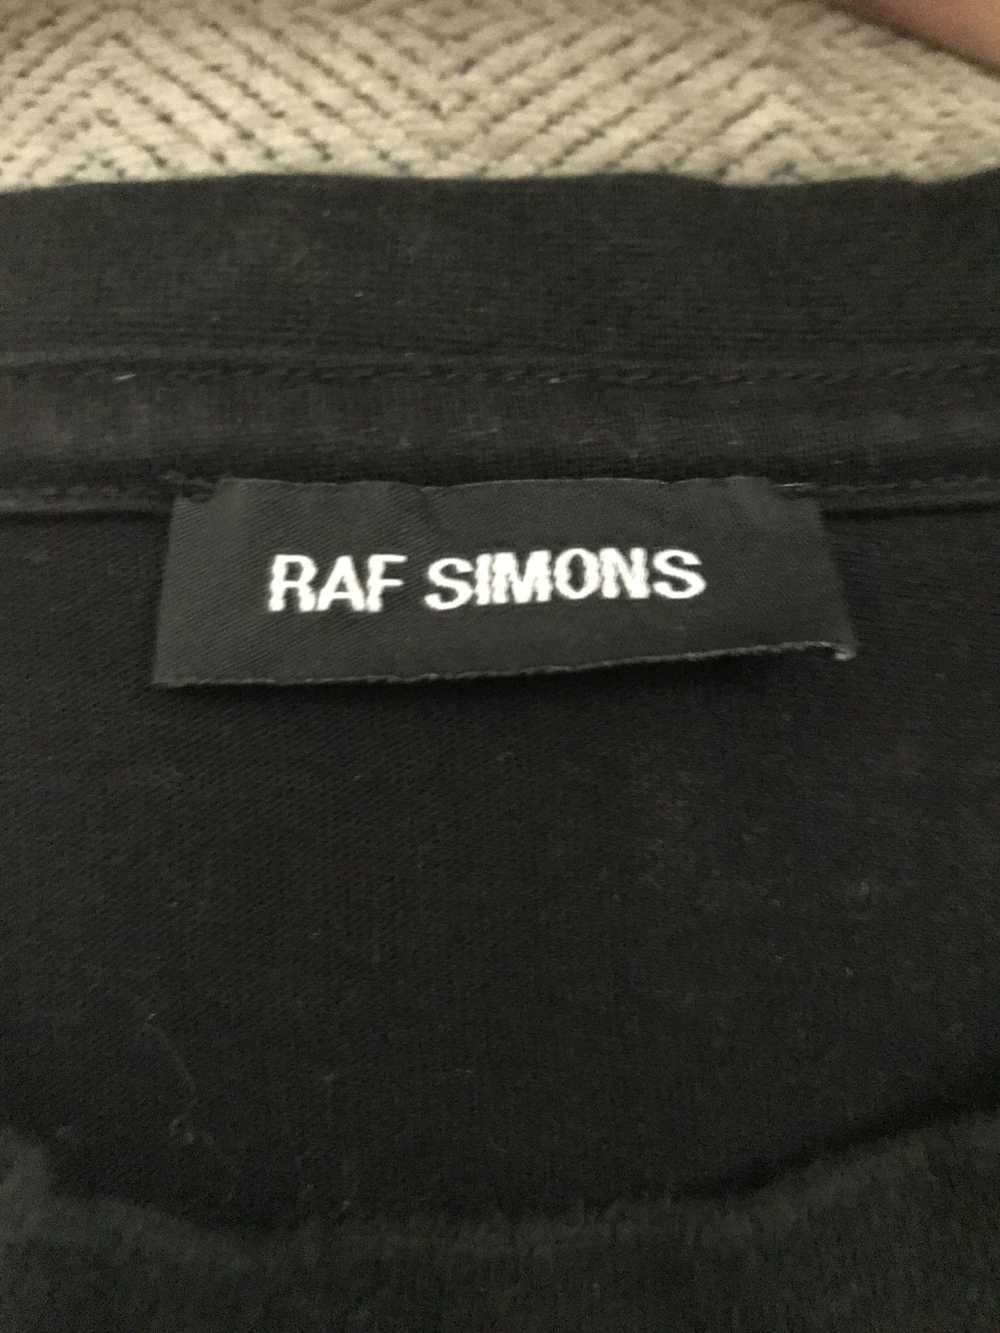 Raf Simons Joy Division T-Shirt - image 3